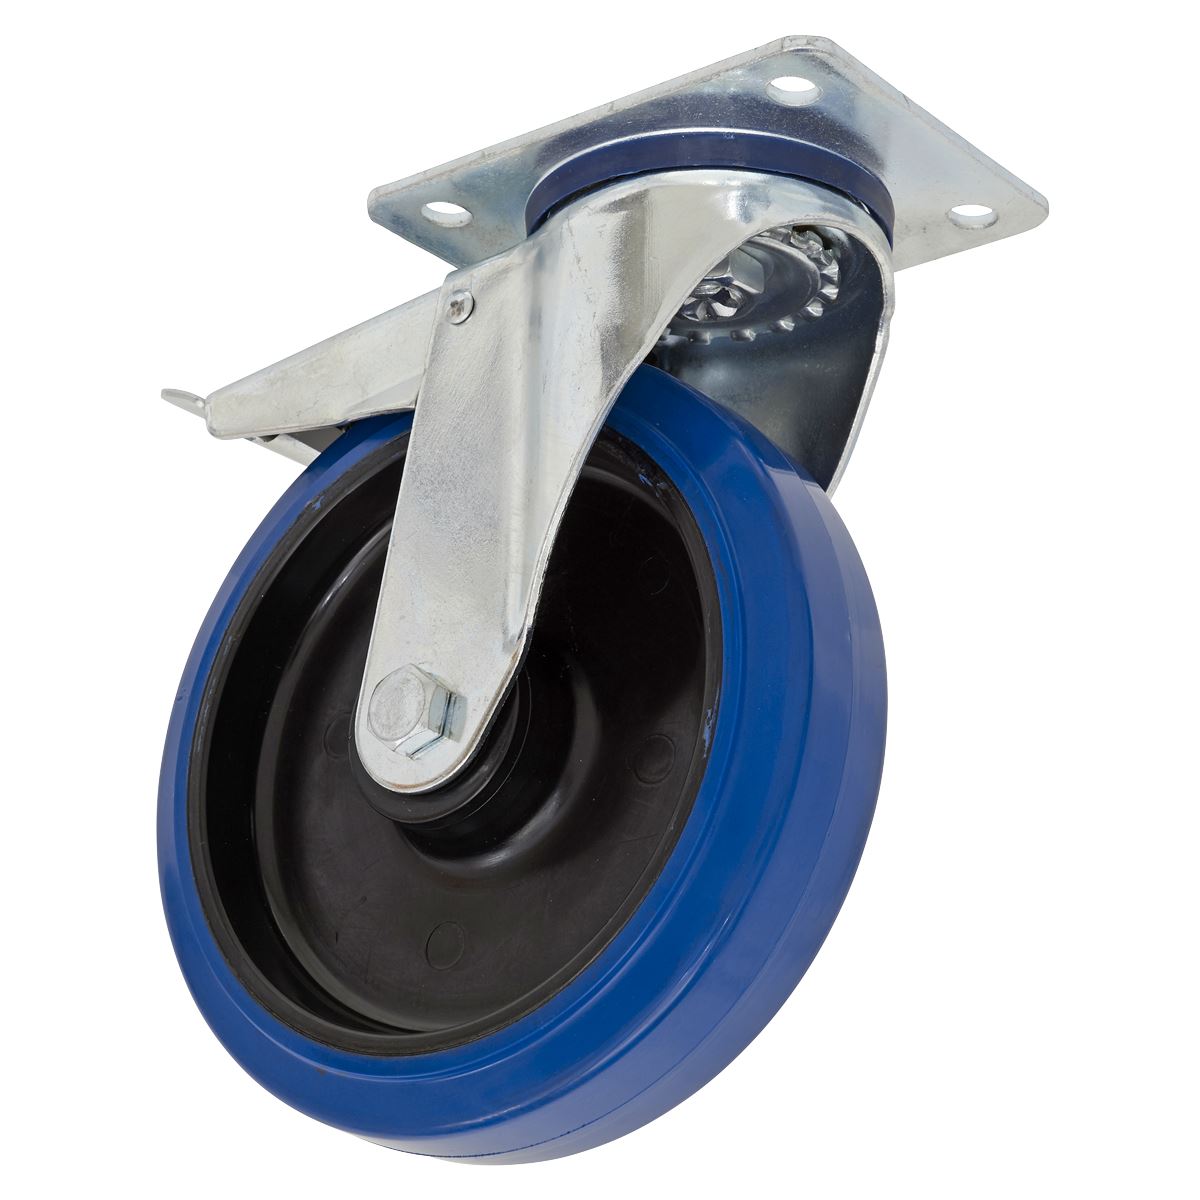 Sealey Heavy-Duty Blue Elastic Rubber Swivel Castor Wheel with Total Lock Ø125mm - Trade